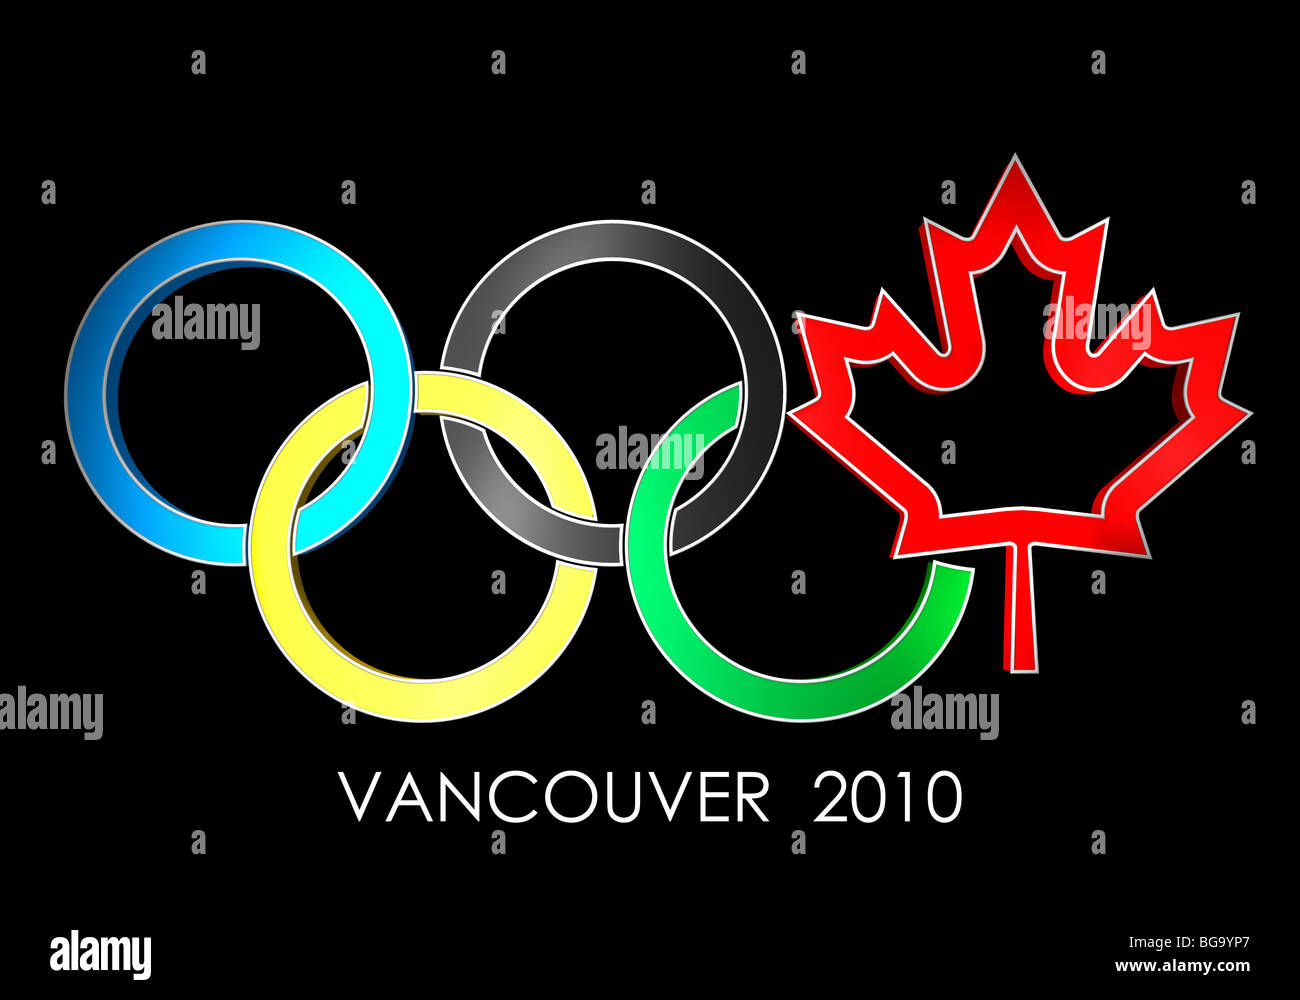 Olympische Ringe Vancouver 2010 Konzept mit einem Kanada Maple Leaf-Symbol. Auf schwarzem Hintergrund isoliert. Stockfoto